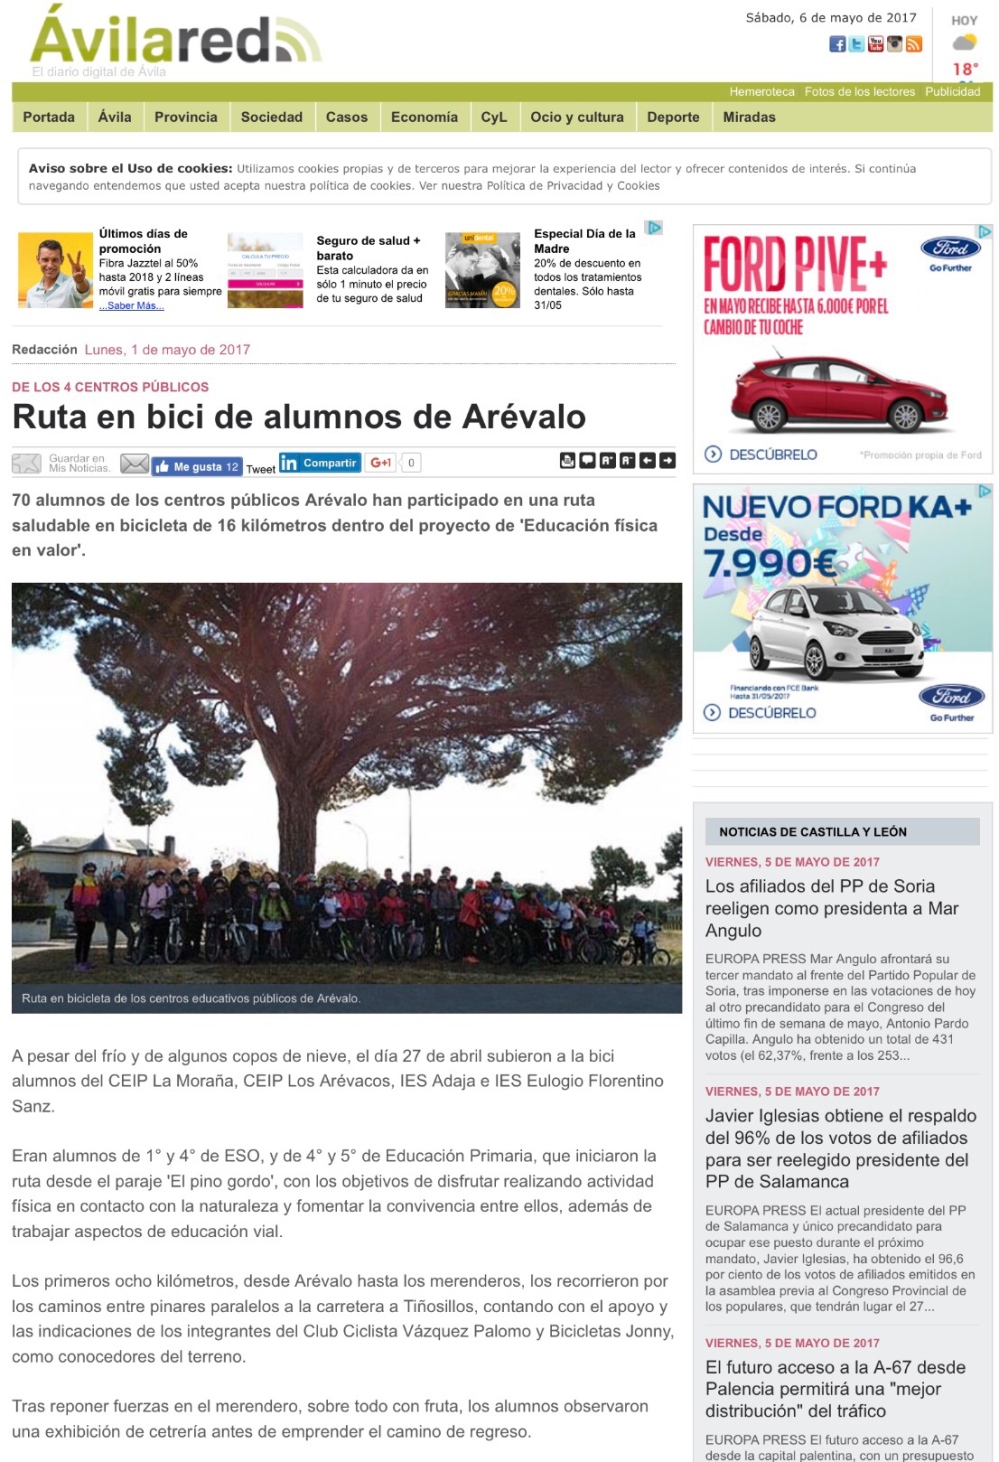 Ruta en bici de los alumnos de Arévalo en Ávila Red